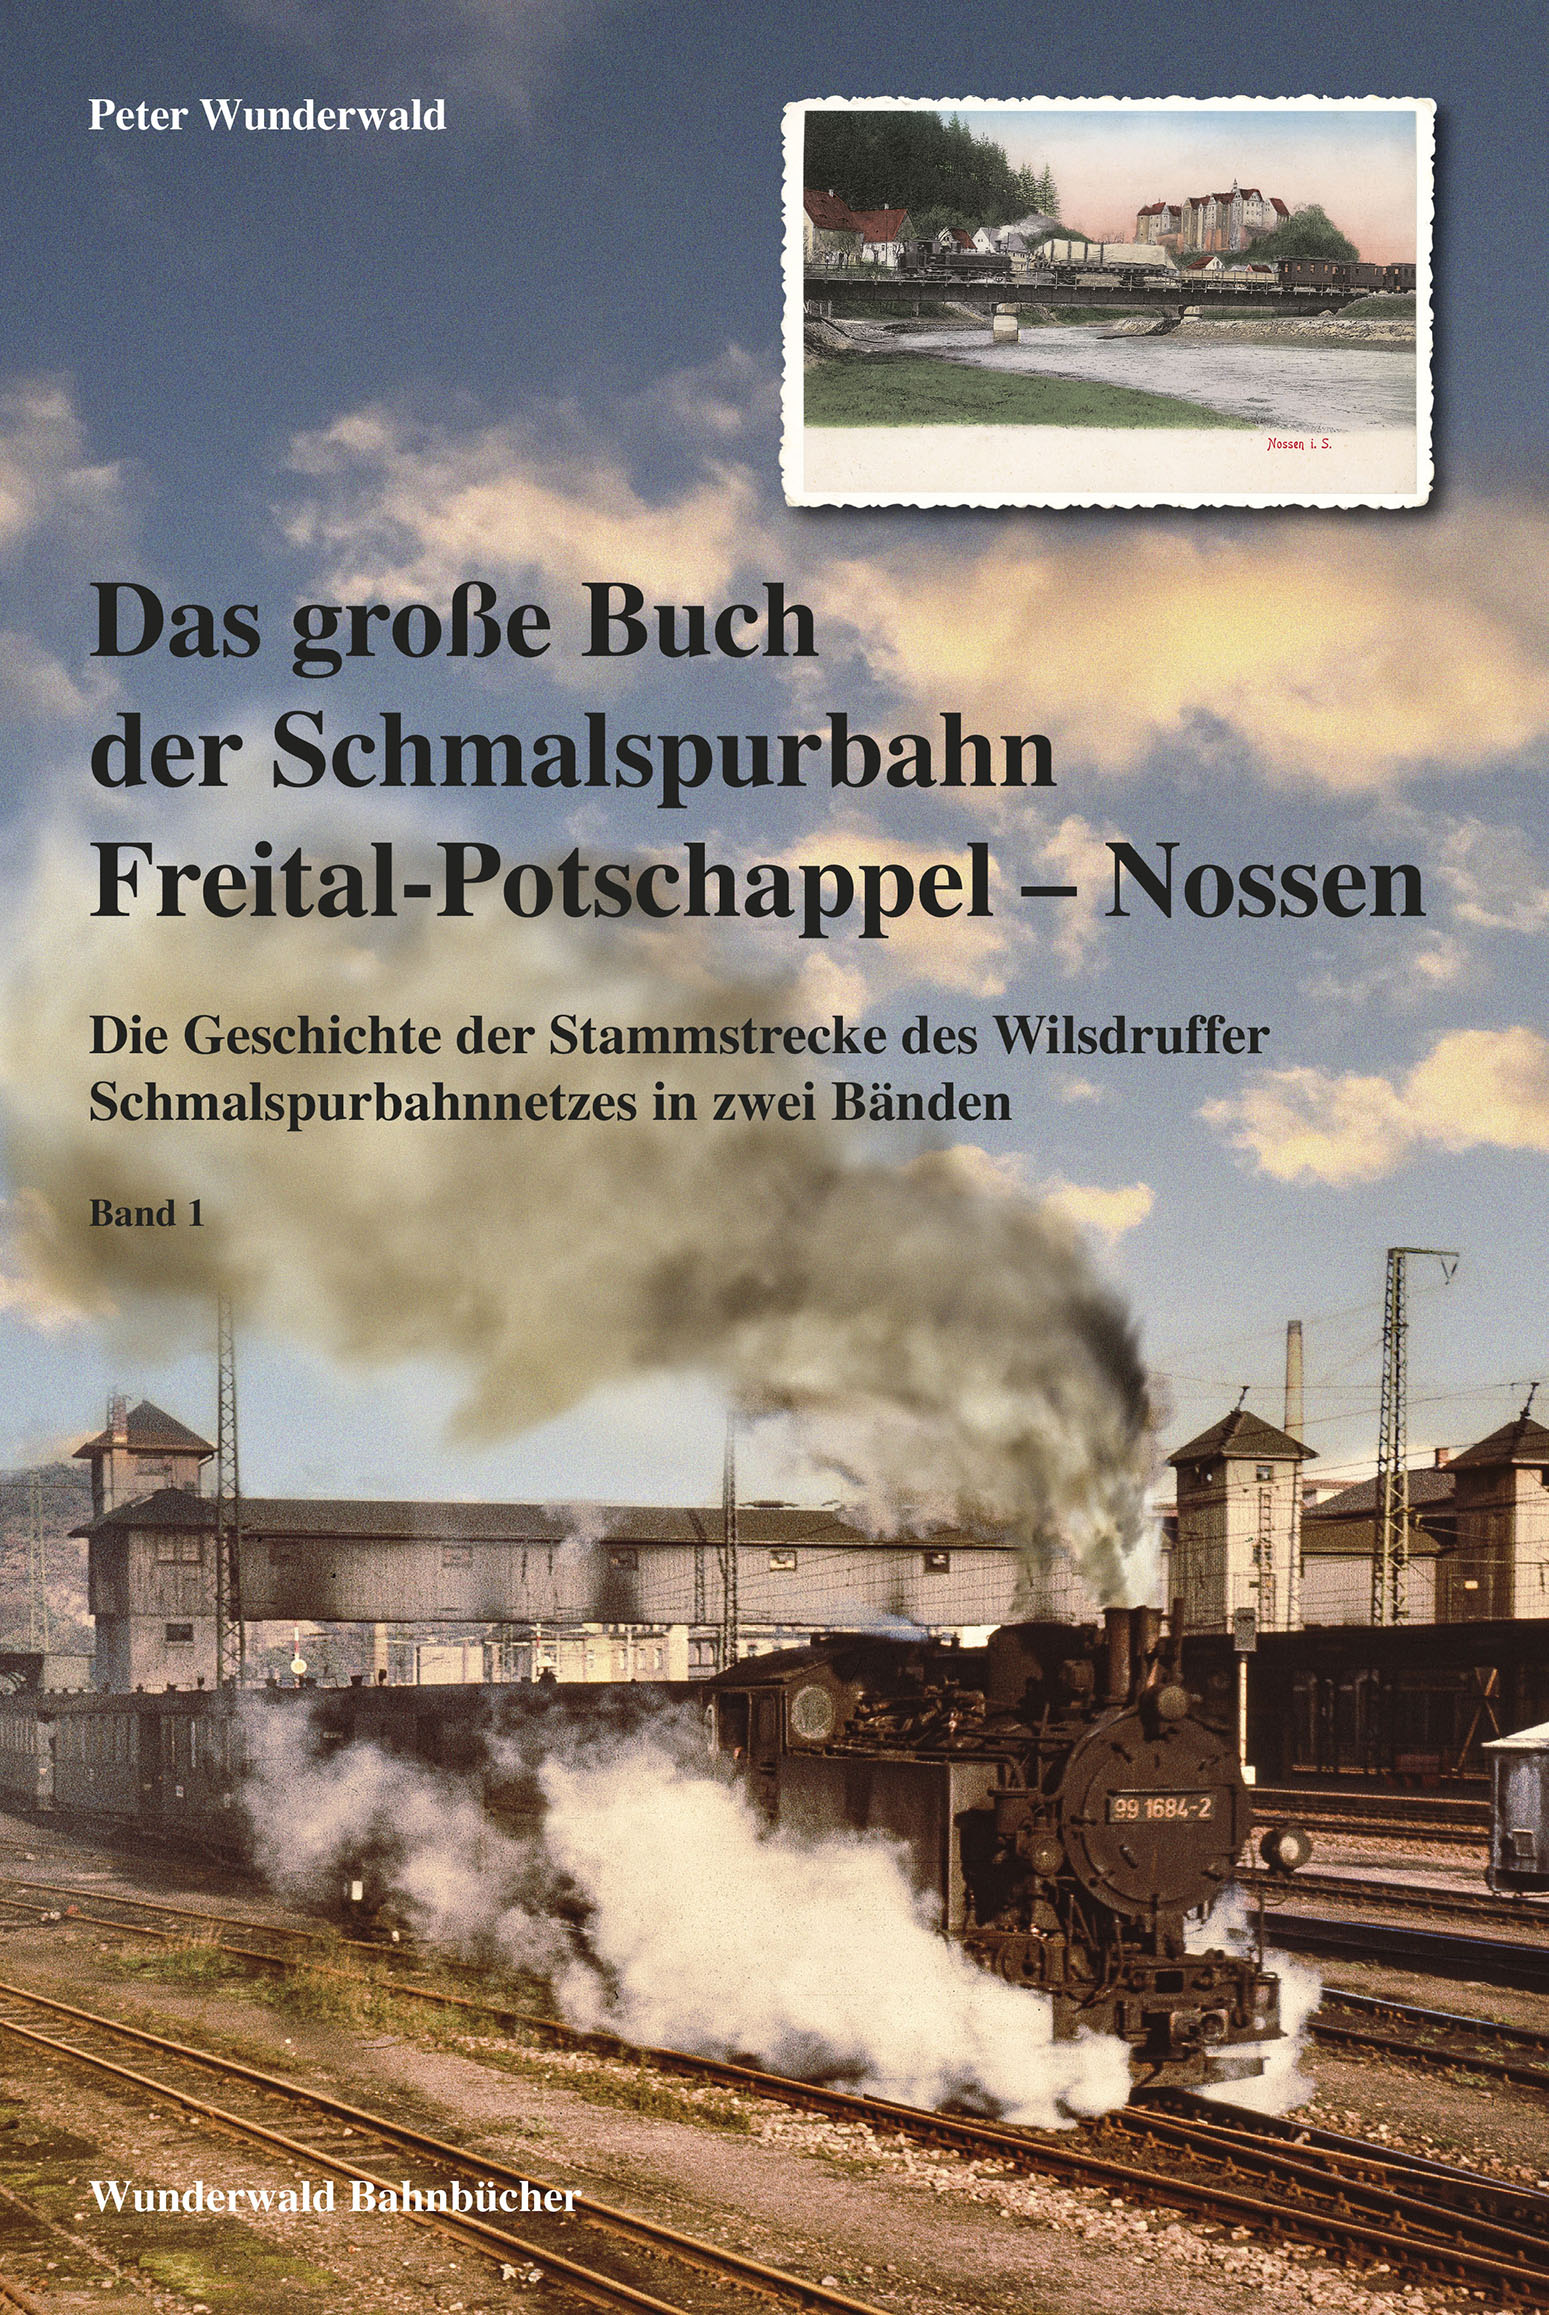 Das große Buch der Schmalspurbahn Freital-Potschappel – Nossen Band 1